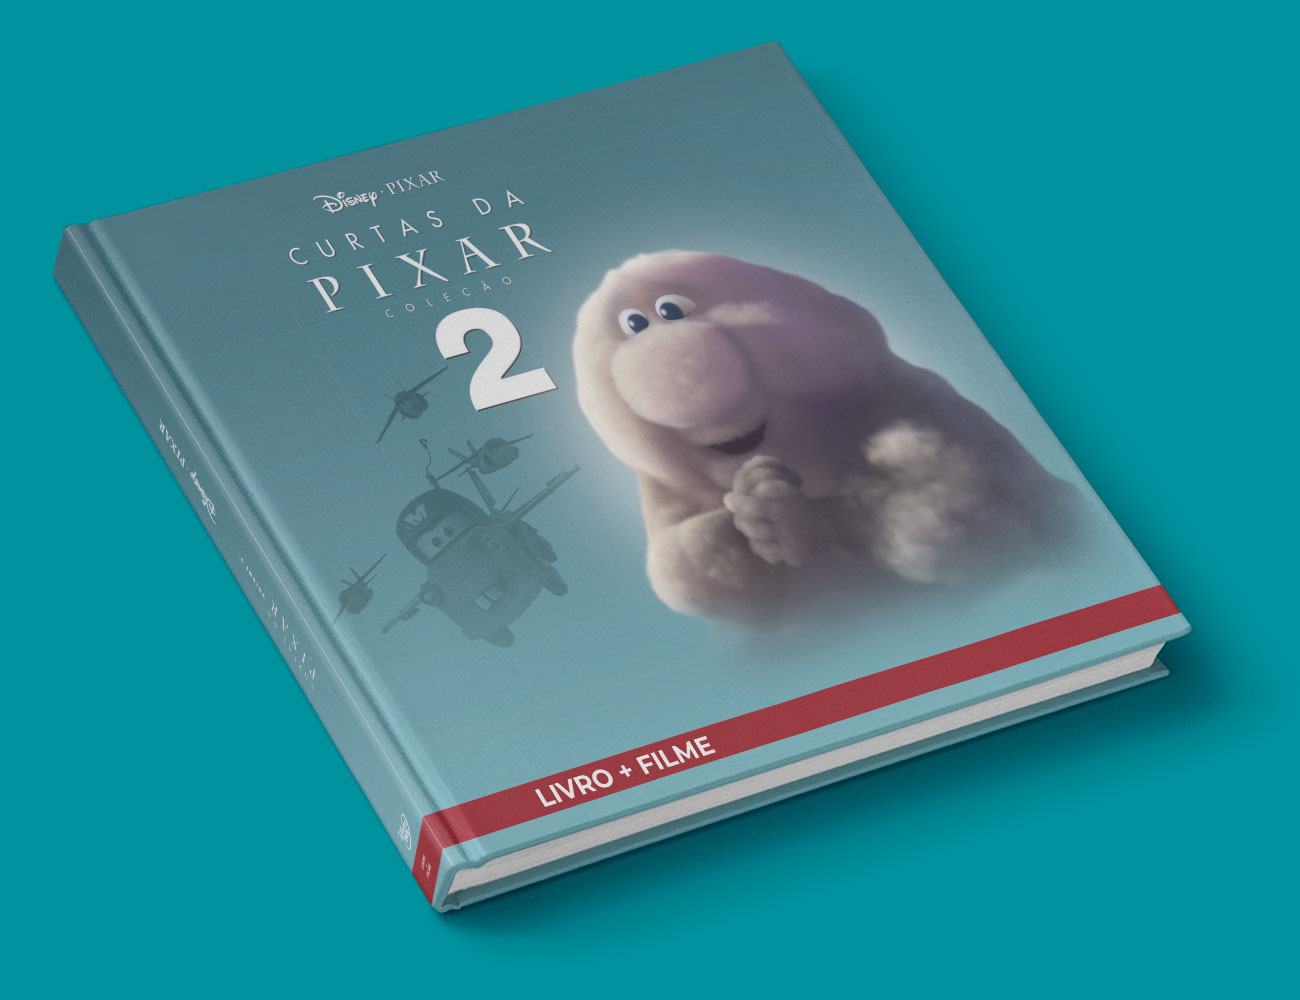 Curtas da Pixar Volume 2